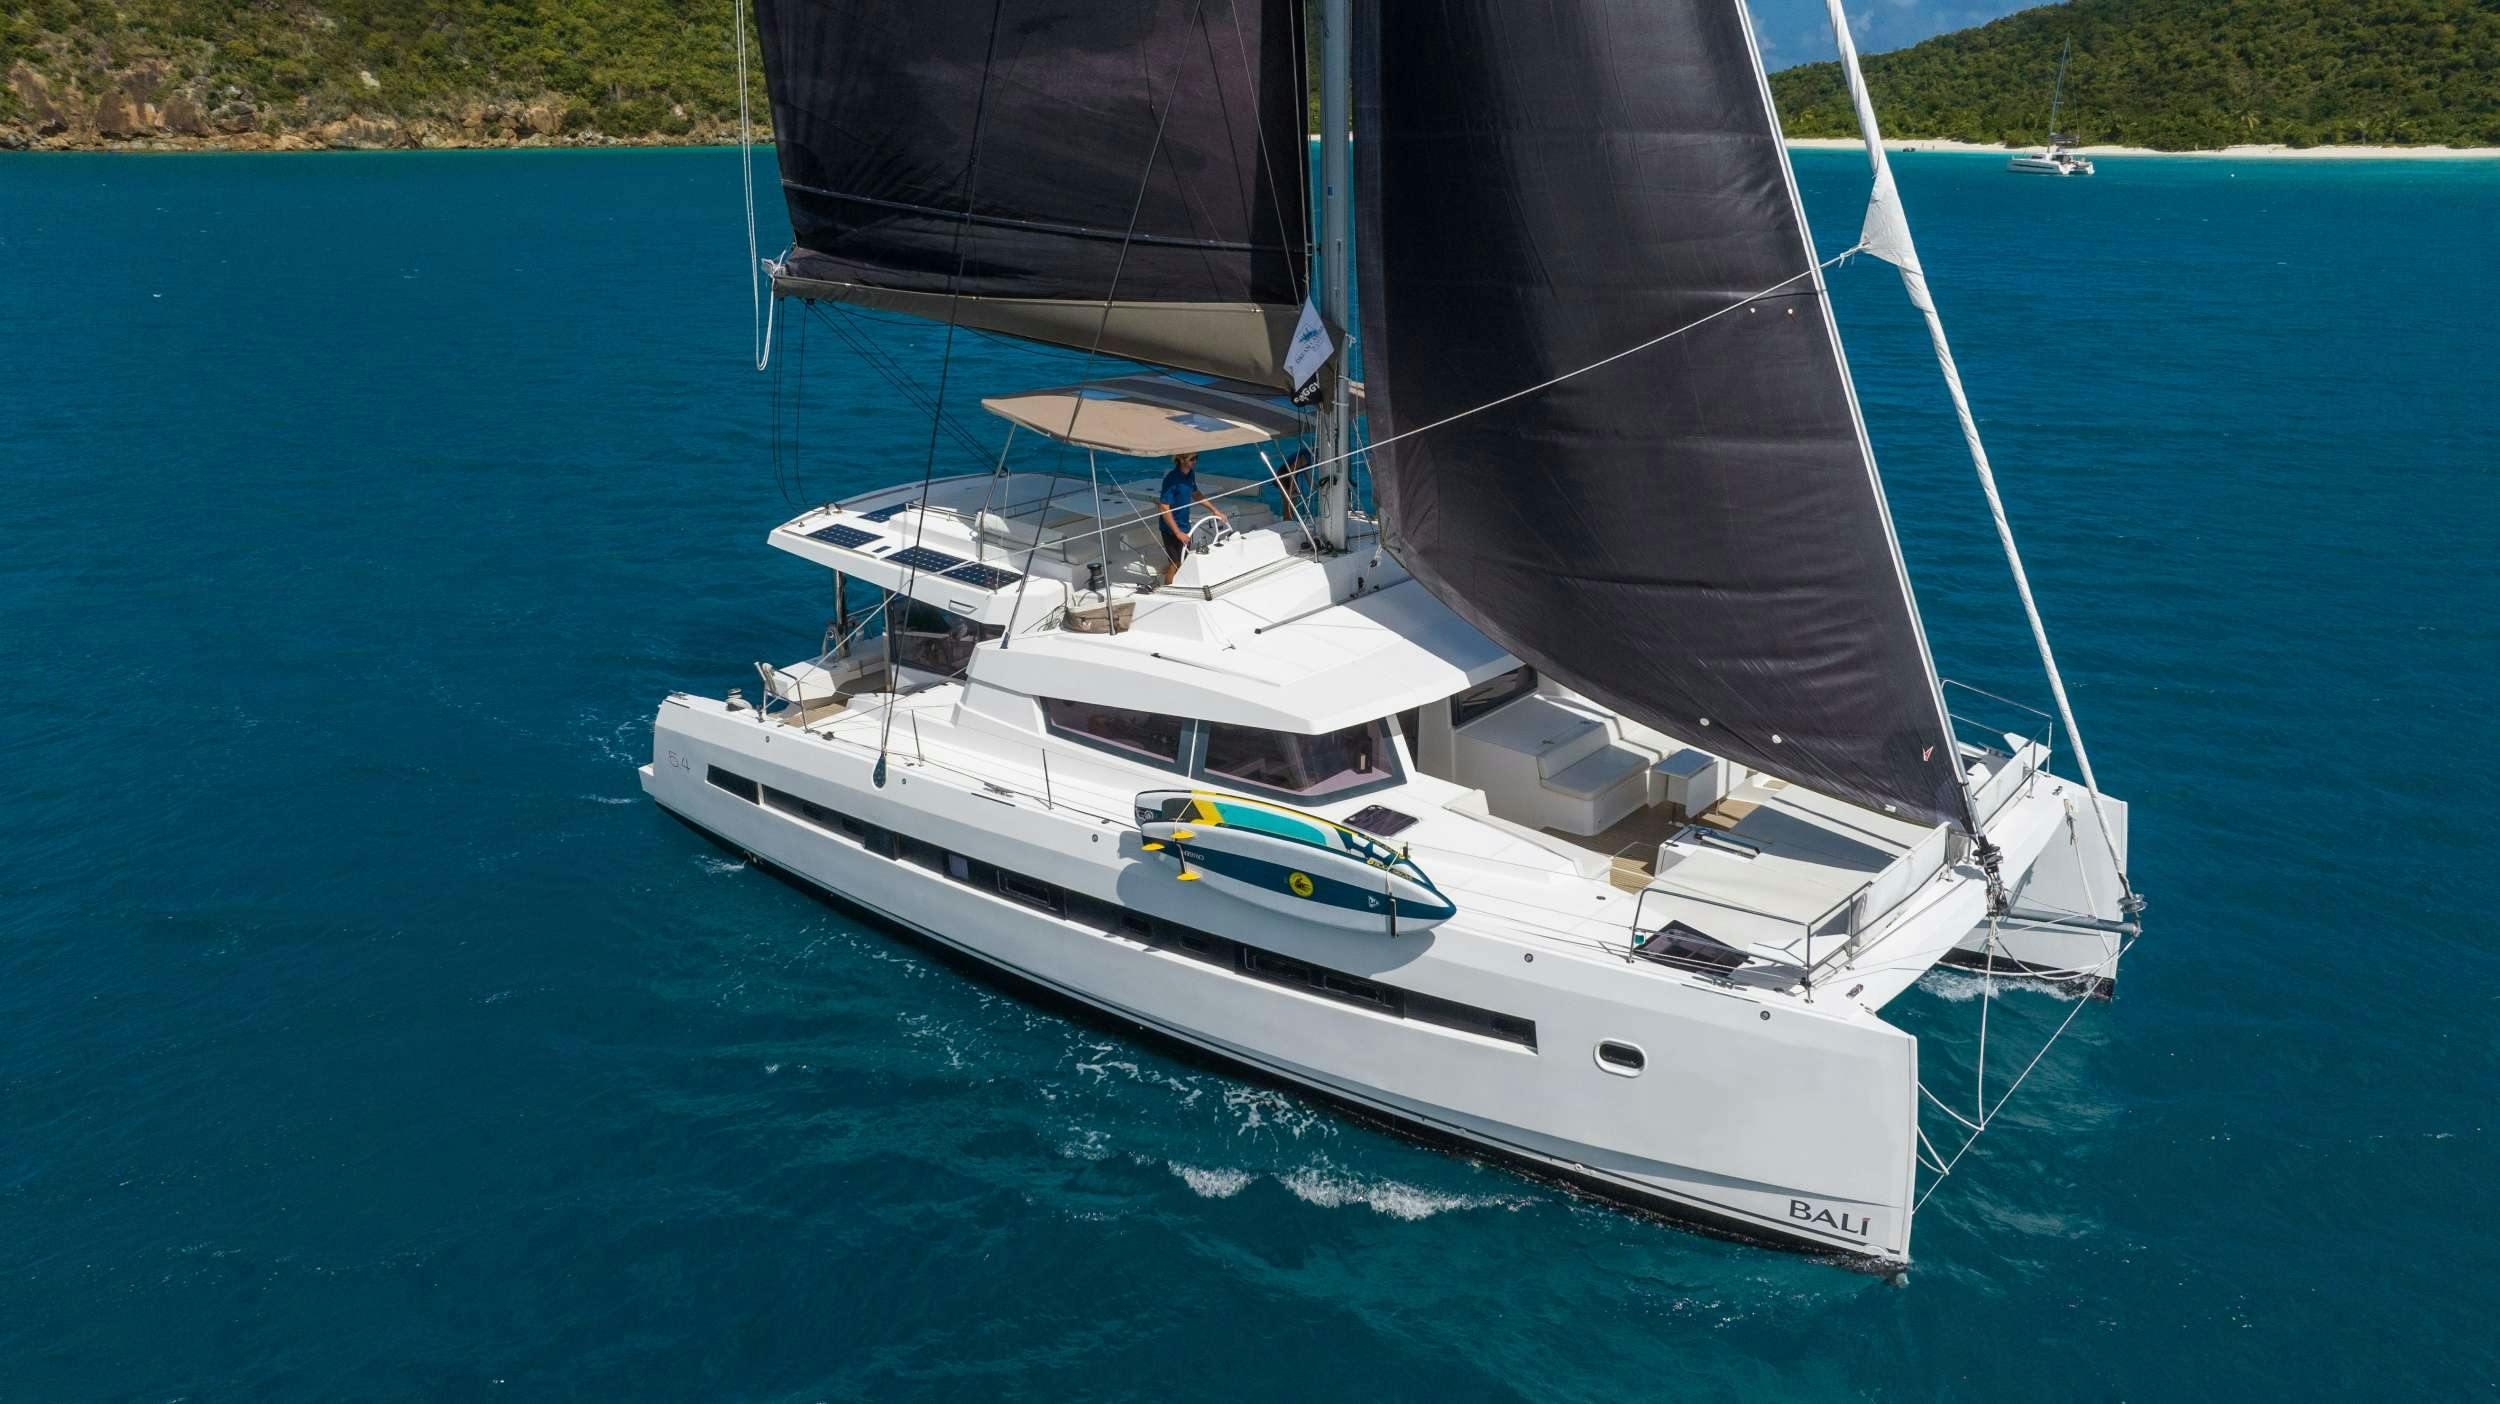 SUN DAZE 5.4 - Yacht Charter Grenada & Boat hire in Caribbean 1